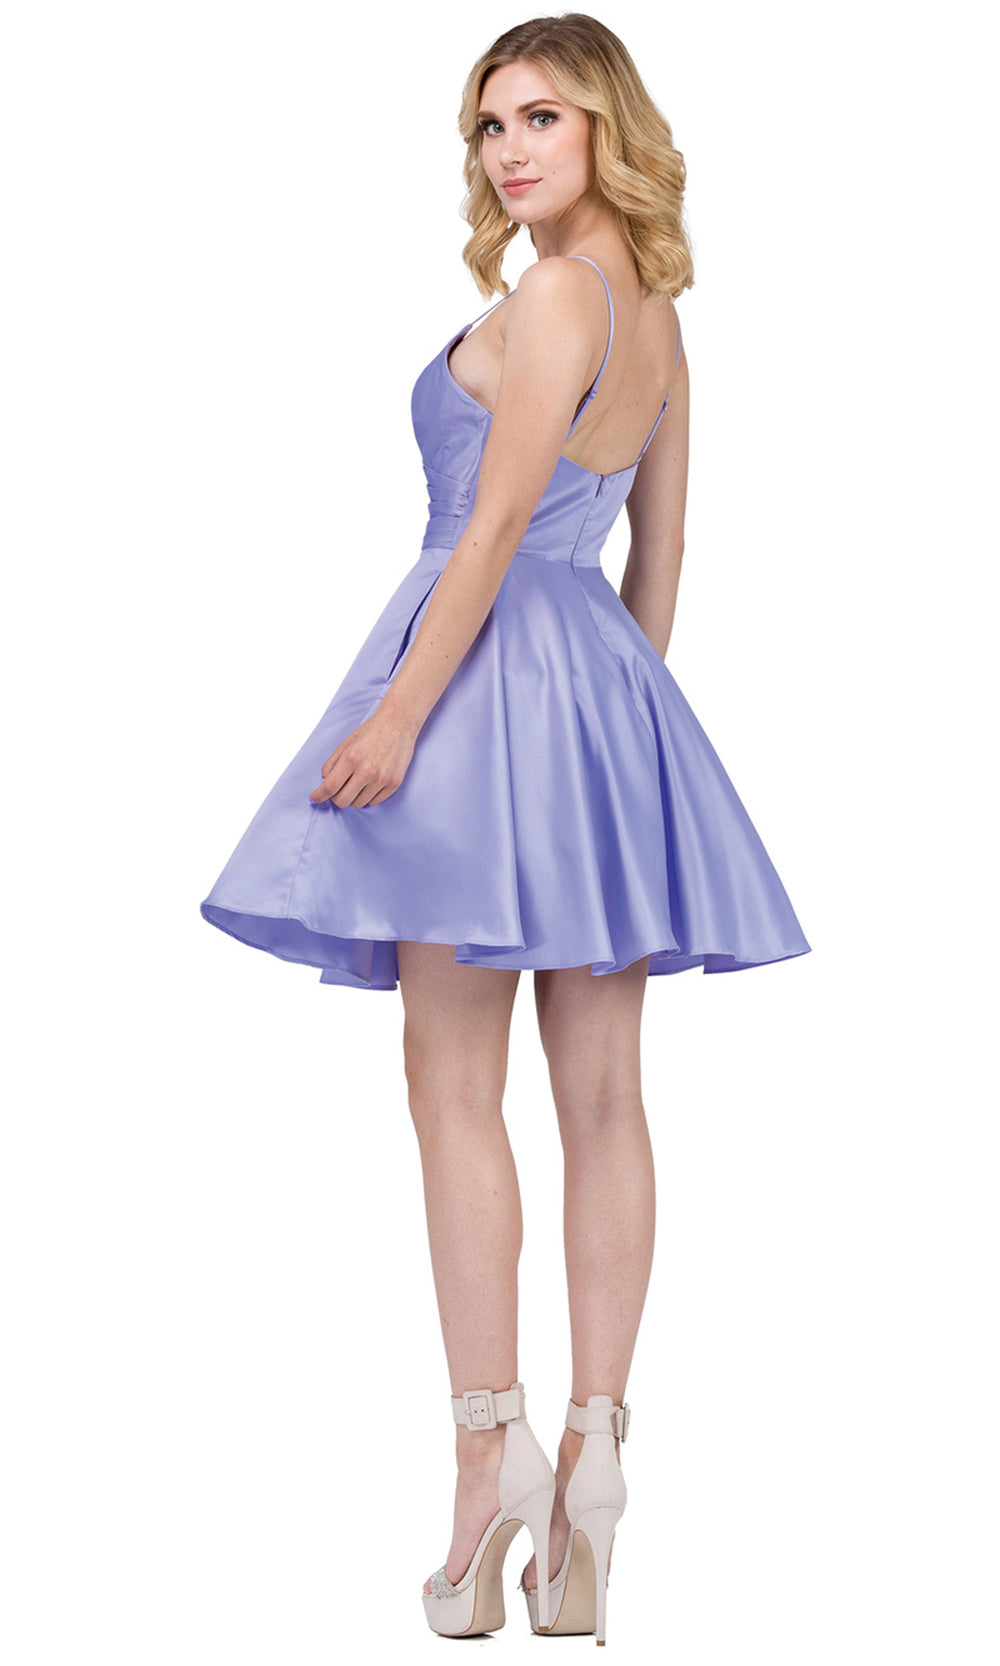 Sweet Jenny II Dress In Purplegrade 8 grad dresses, graduation dresses